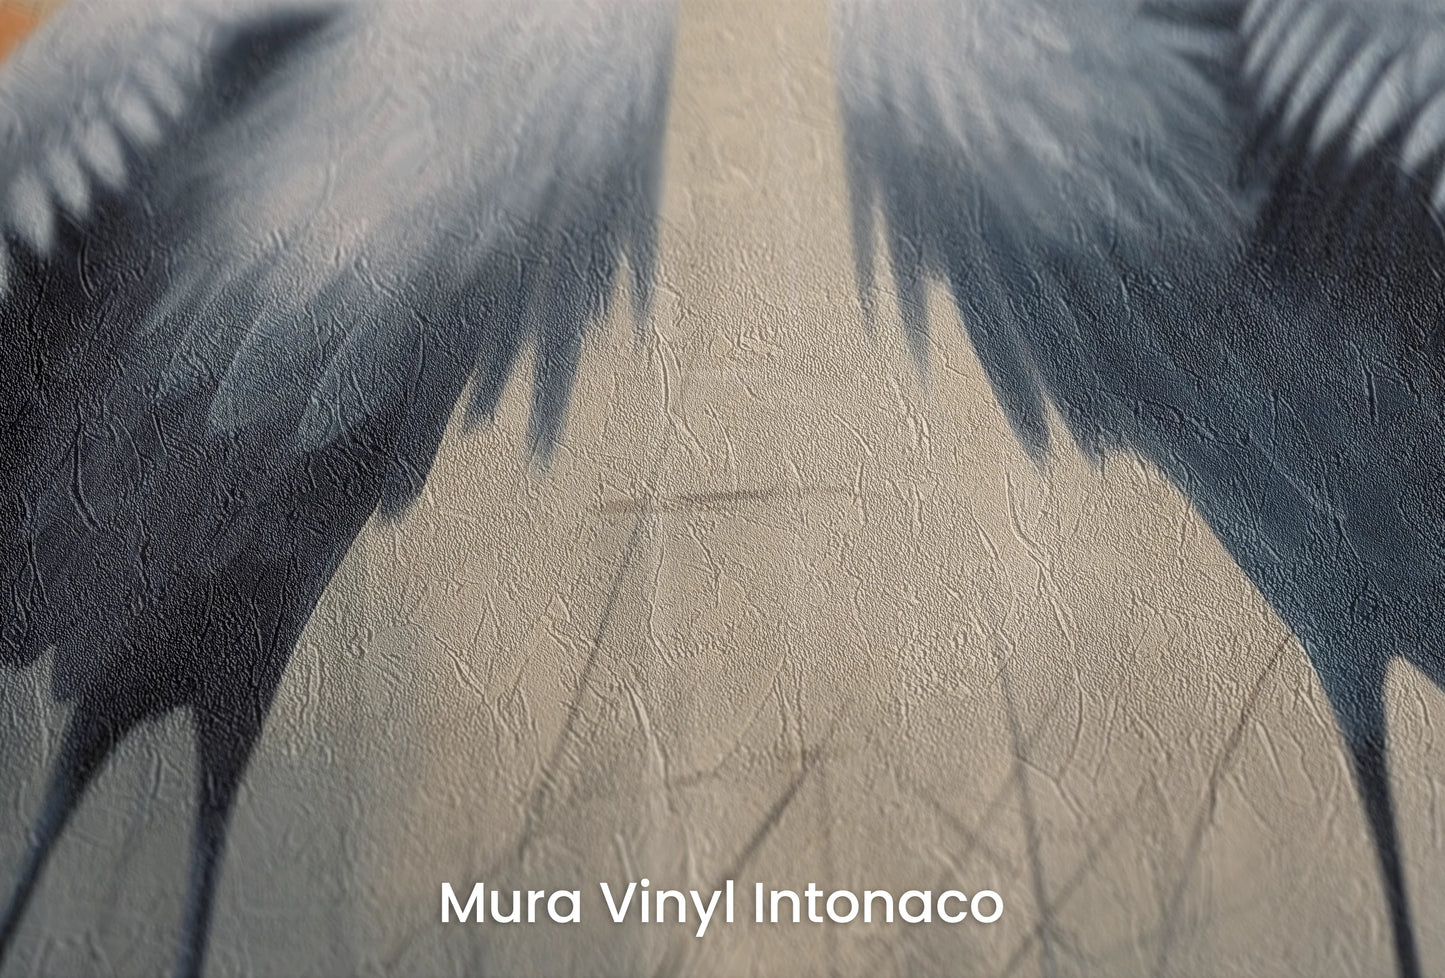 Zbliżenie na artystyczną fototapetę o nazwie Solemn Vow na podłożu Mura Vinyl Intonaco - struktura tartego tynku.